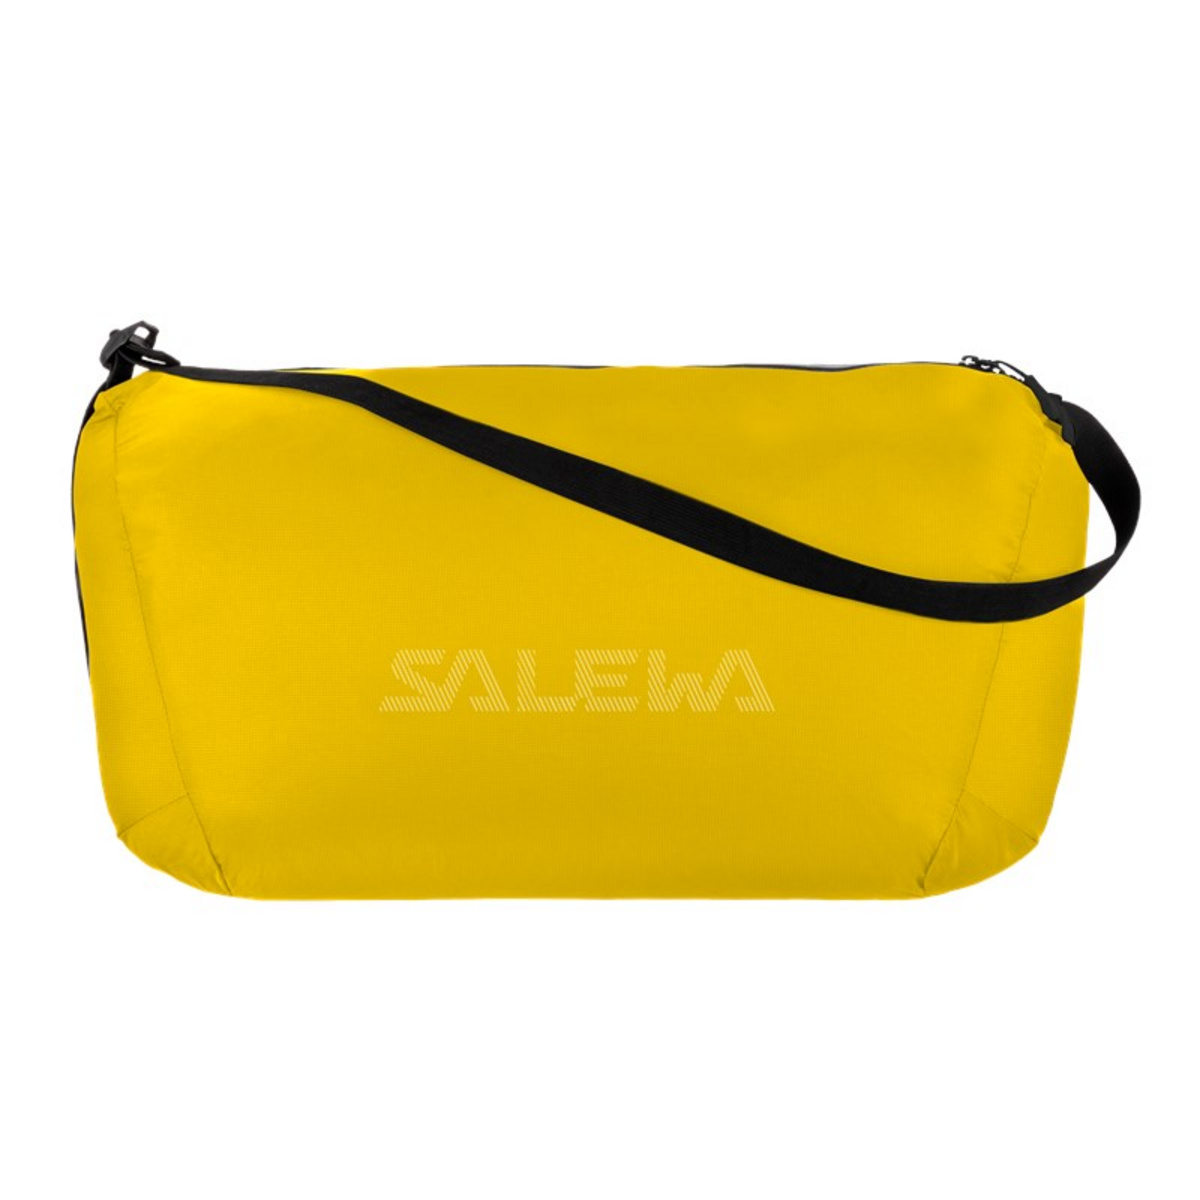 Salewa Ultralight Duffle 28 Reisetasche von Salewa